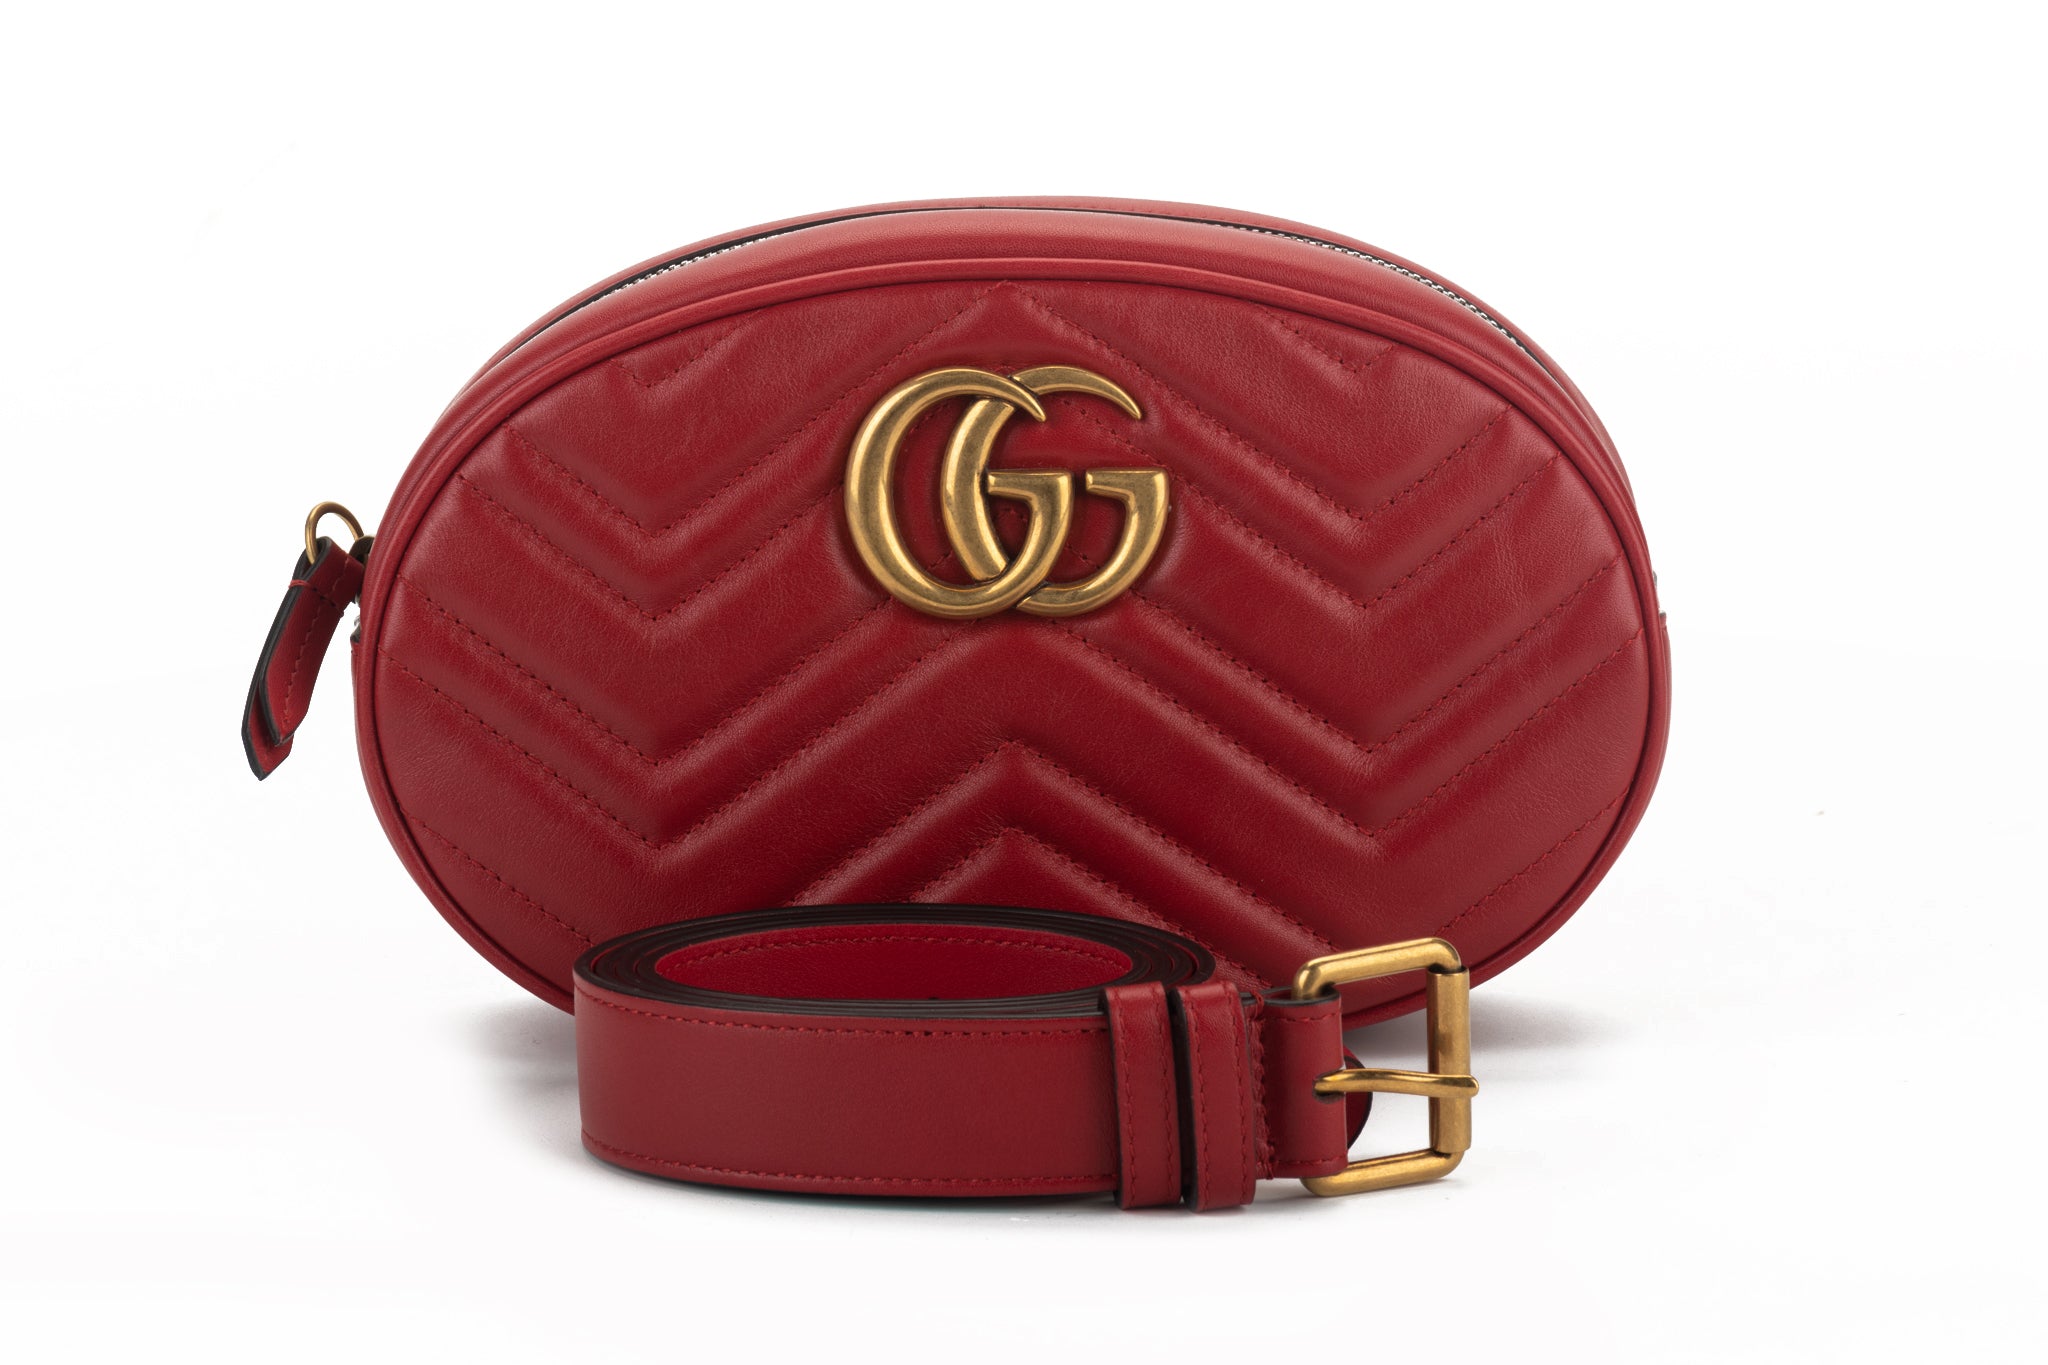 Gucci Fanny Packs in Handbags 